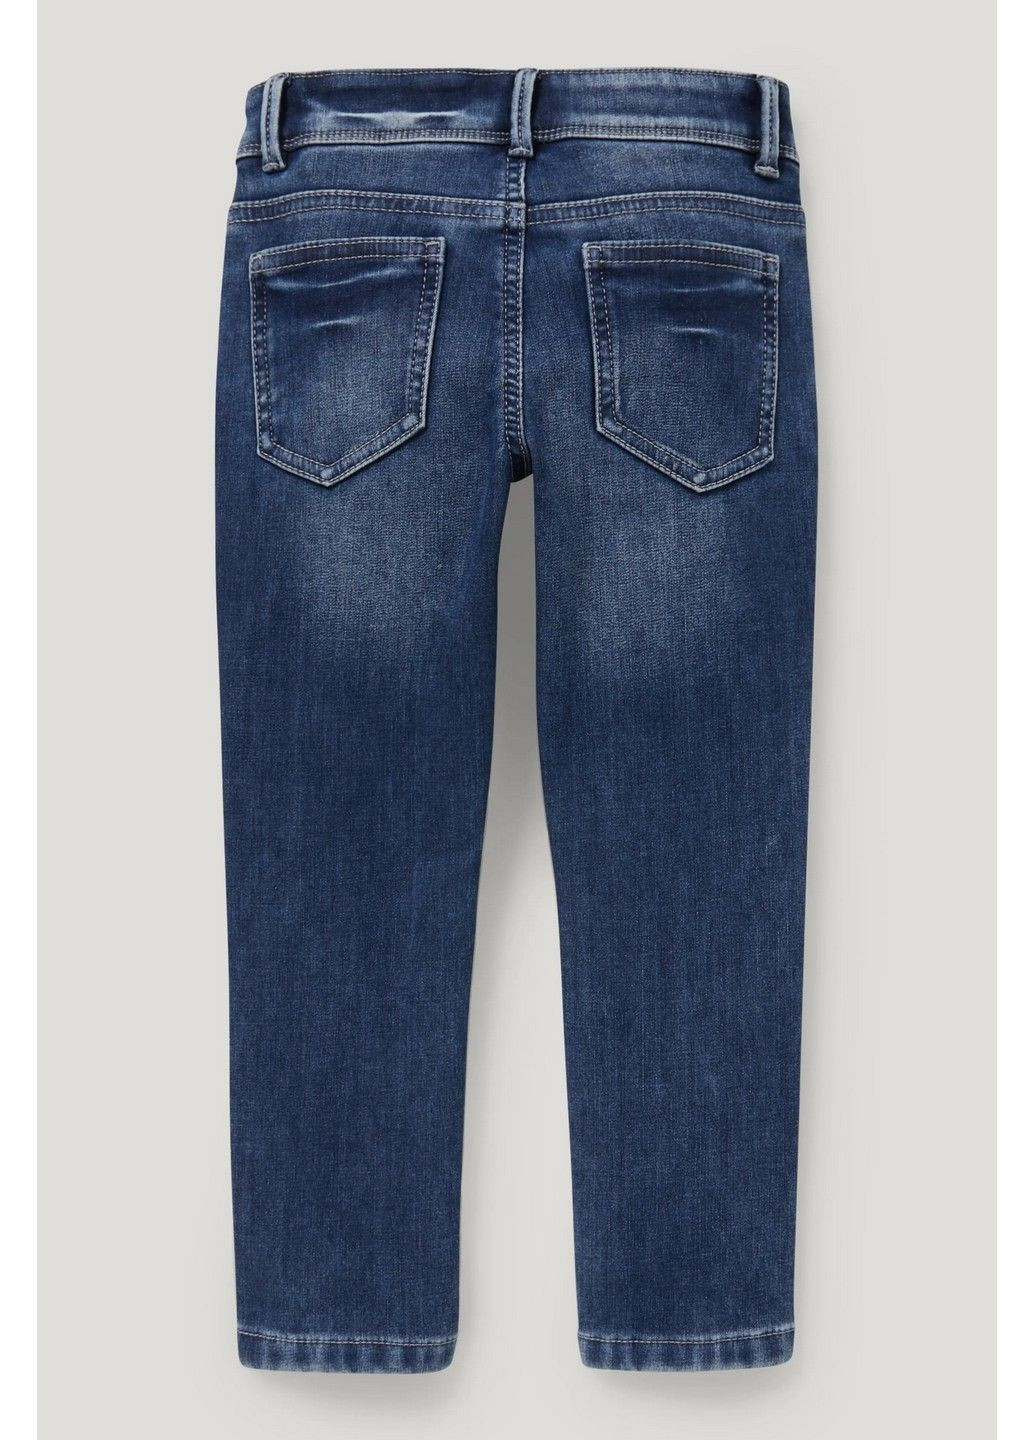 Синие демисезонные джинсы теплые C&A